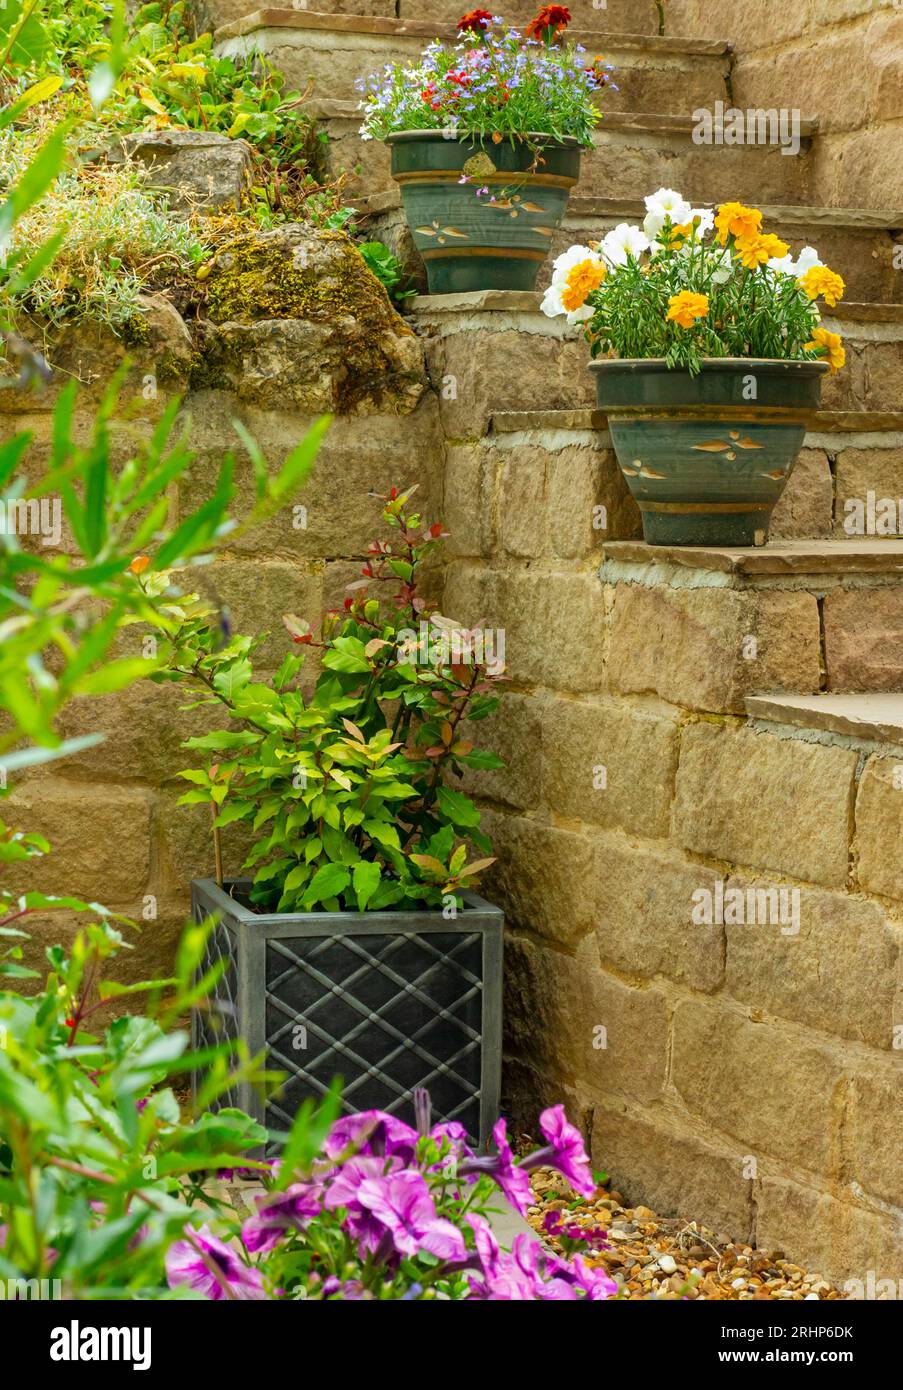 Pflanzgefäße und Töpfe in einem Terrassengarten im Sommer mit Topfpflanzen, einschließlich Lobelien, Ringelblumen und Petunien, mit Wänden und Stufen auf verschiedenen Ebenen Stockfoto